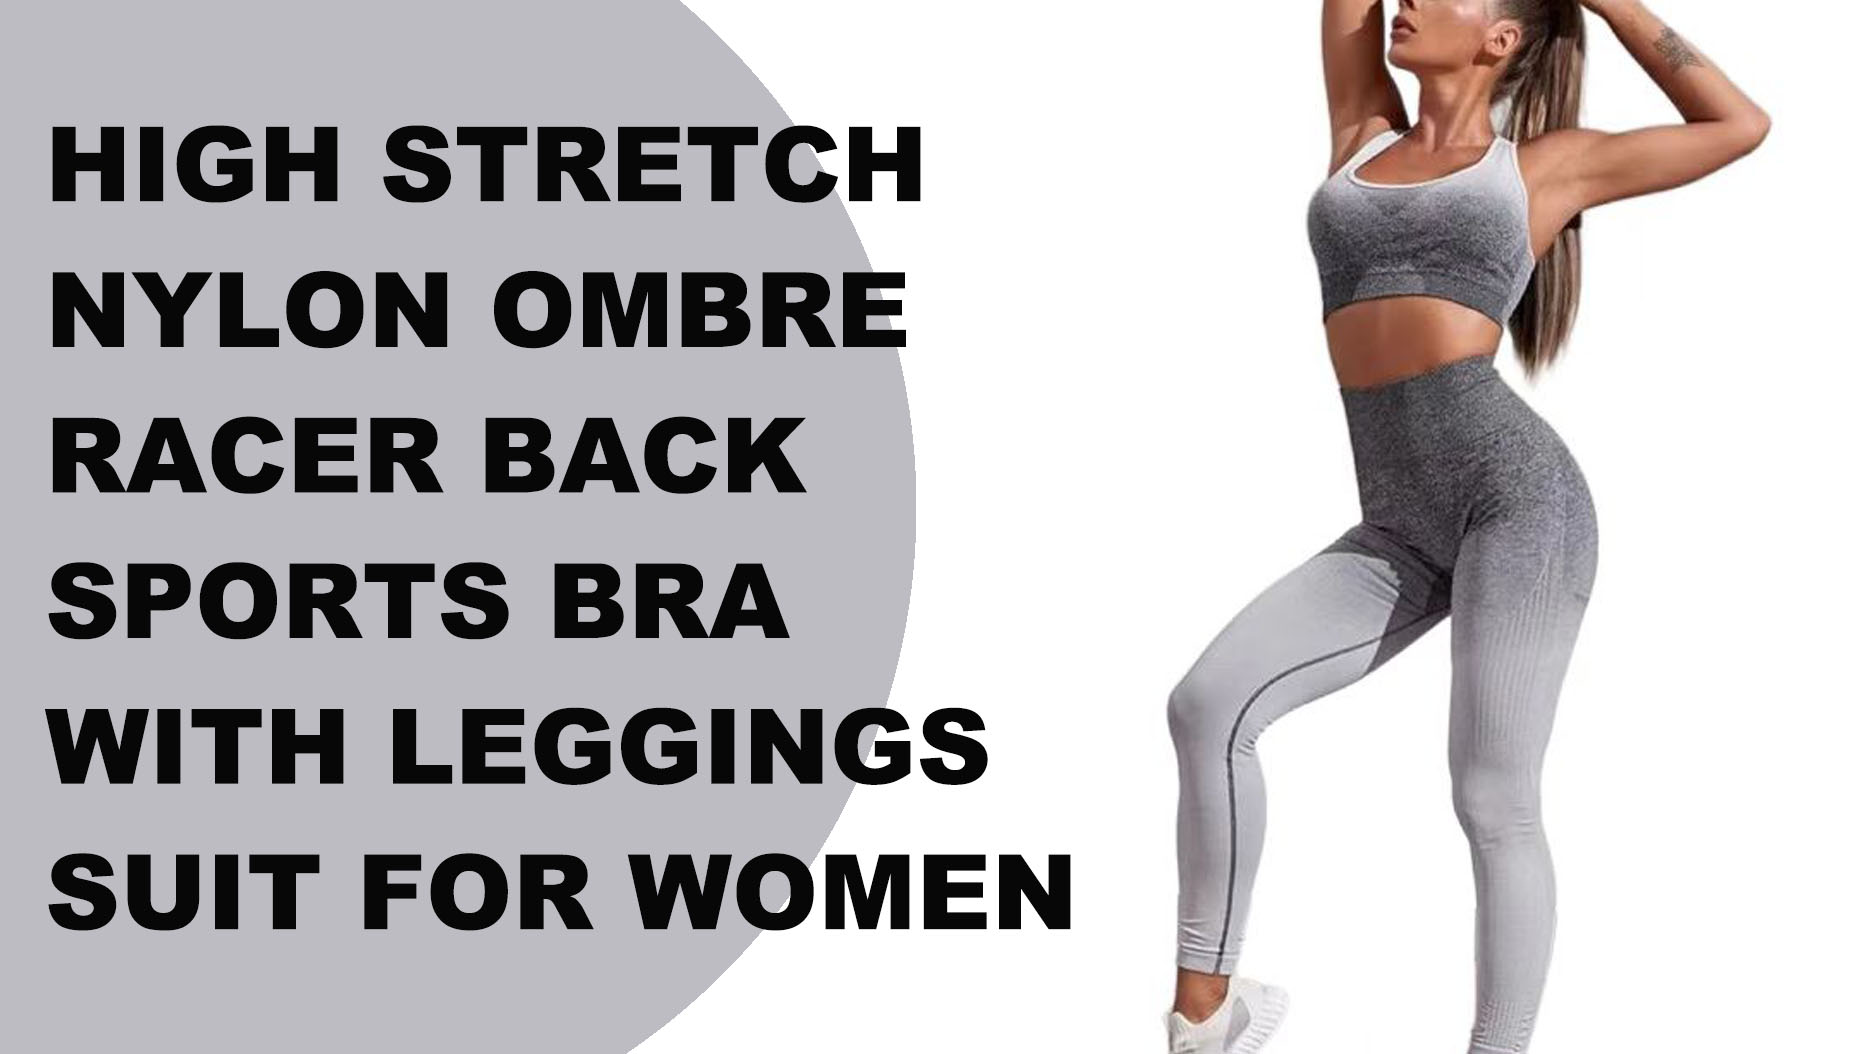 Biustonosz sportowy o wysokiej rozciągliwości z nylonu Ombre Racer Back i legginsy dla kobiet